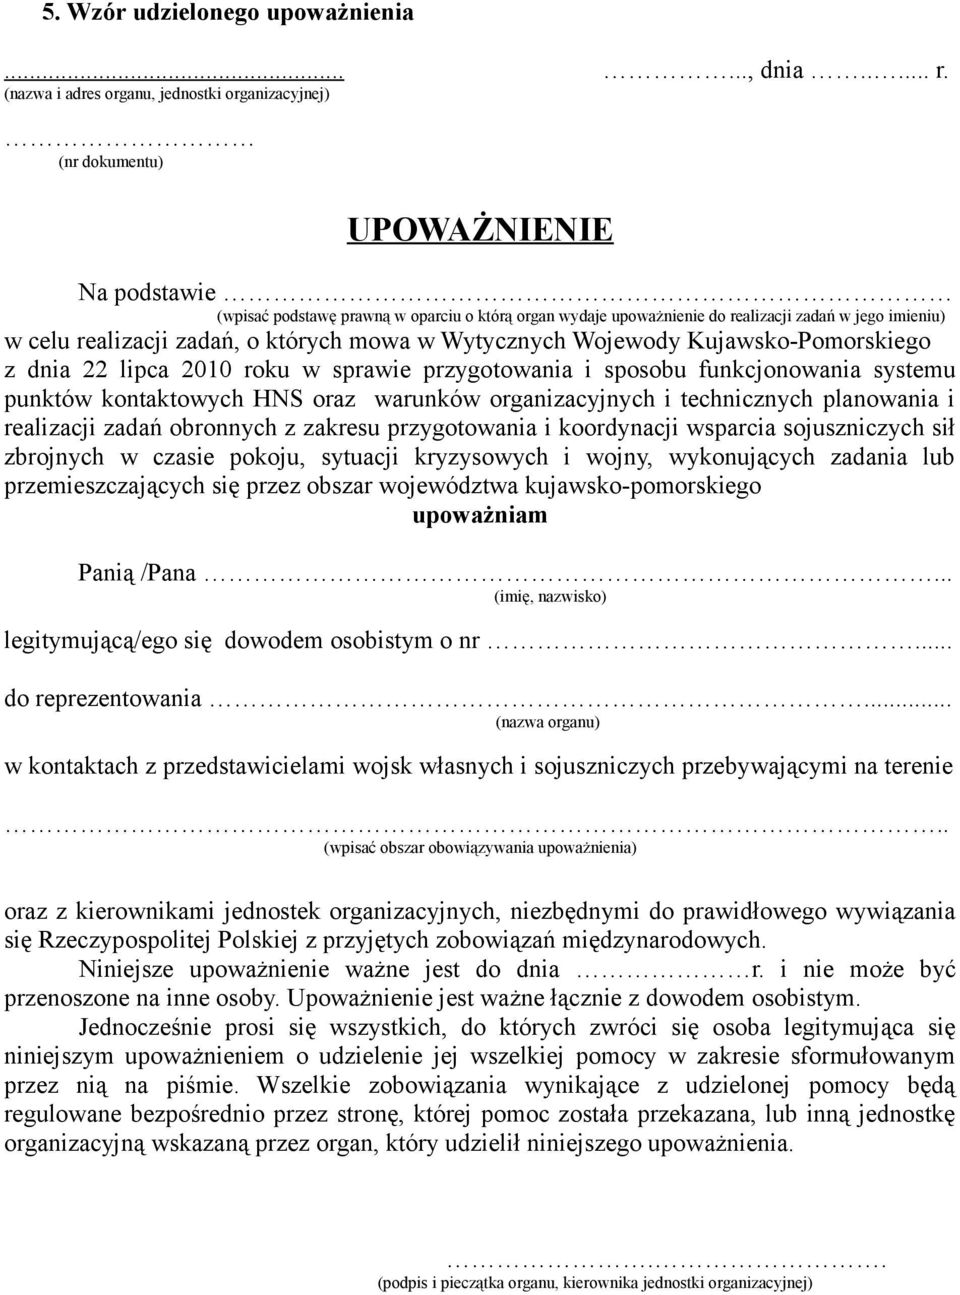 celu realizacji zadań, o których mowa w Wytycznych Wojewody Kujawsko-Pomorskiego z dnia 22 lipca 2010 roku w sprawie przygotowania i sposobu funkcjonowania systemu punktów kontaktowych HNS oraz